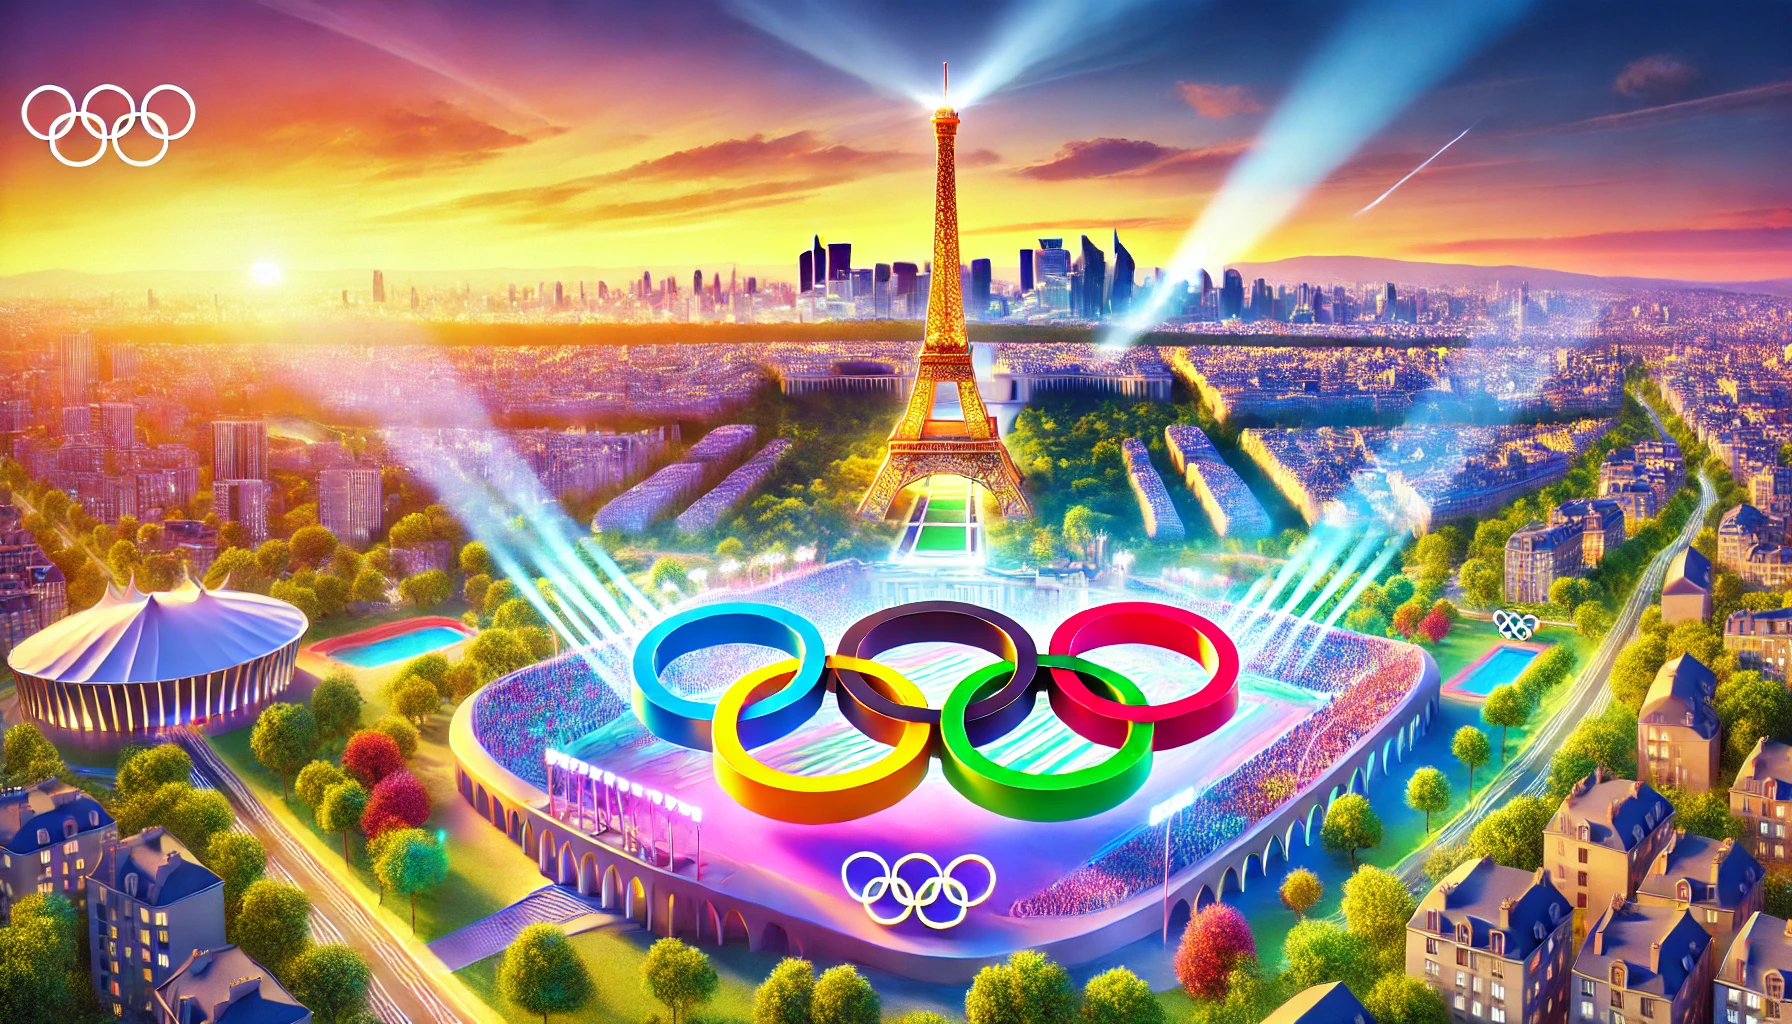 Óriási üzlet a párizsi olimpia: a francia GDP 10 milliárd euróval nőhet